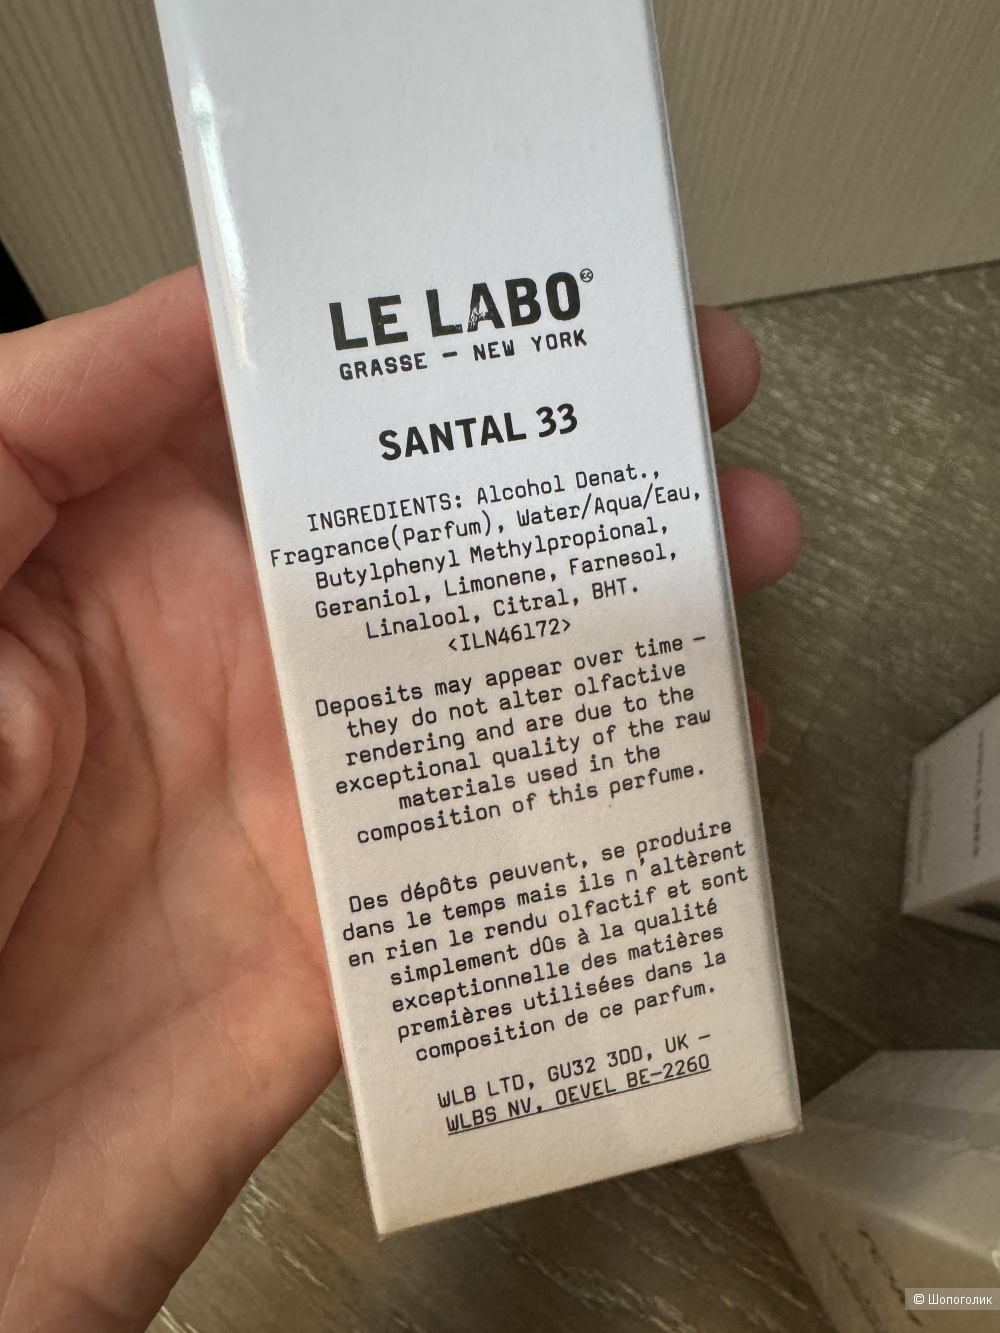 Туалетная вода/парфюм Le labo santal 33 , 40 ml